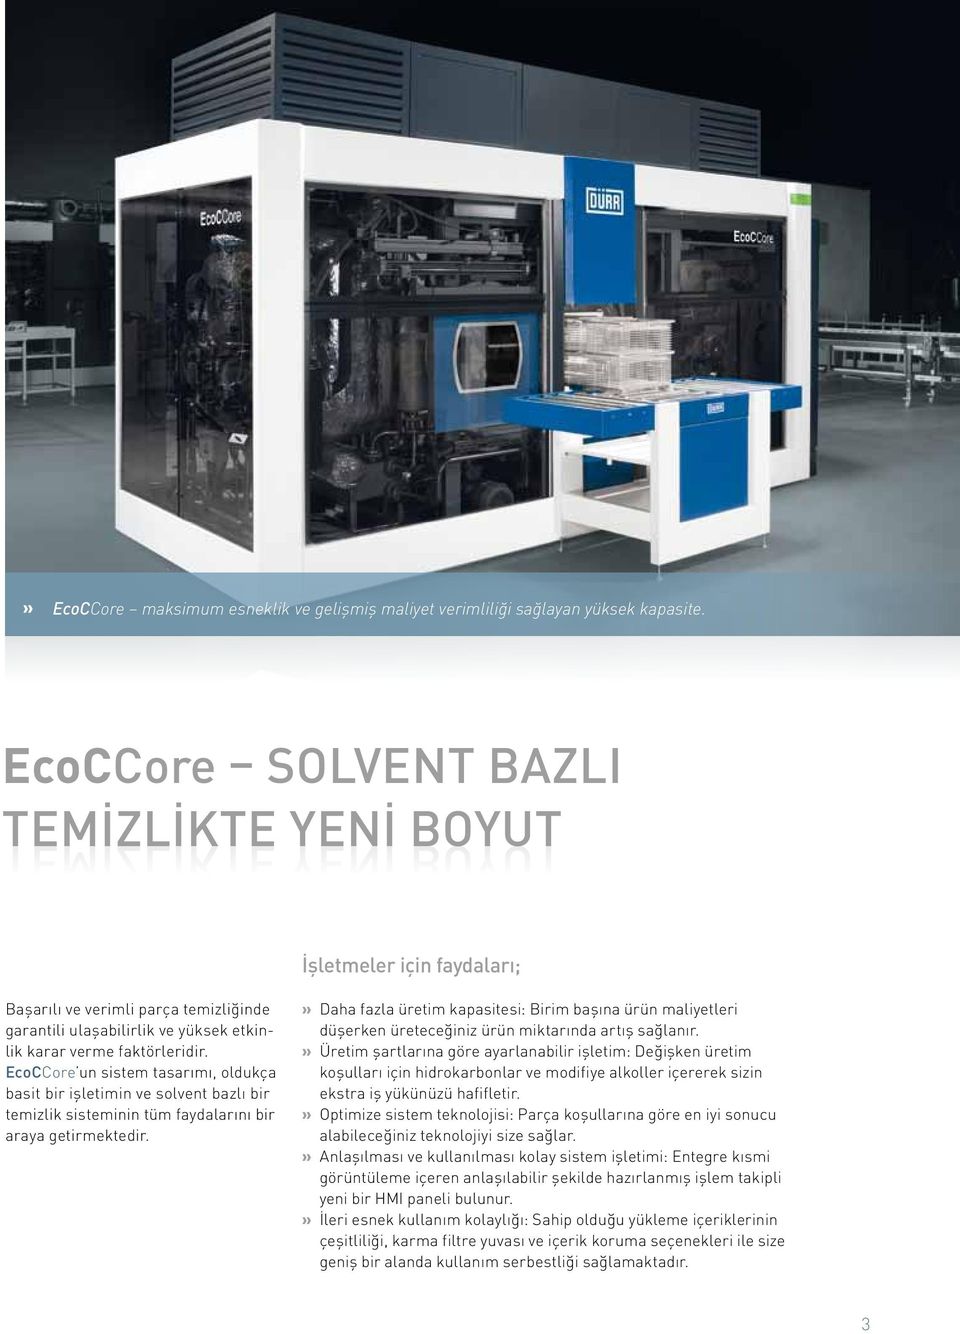 faktörleridir. EcoCCore un sistem tasarımı, oldukça basit bir işletimin ve solvent bazlı bir temizlik sisteminin tüm faydalarını bir araya getirmektedir.